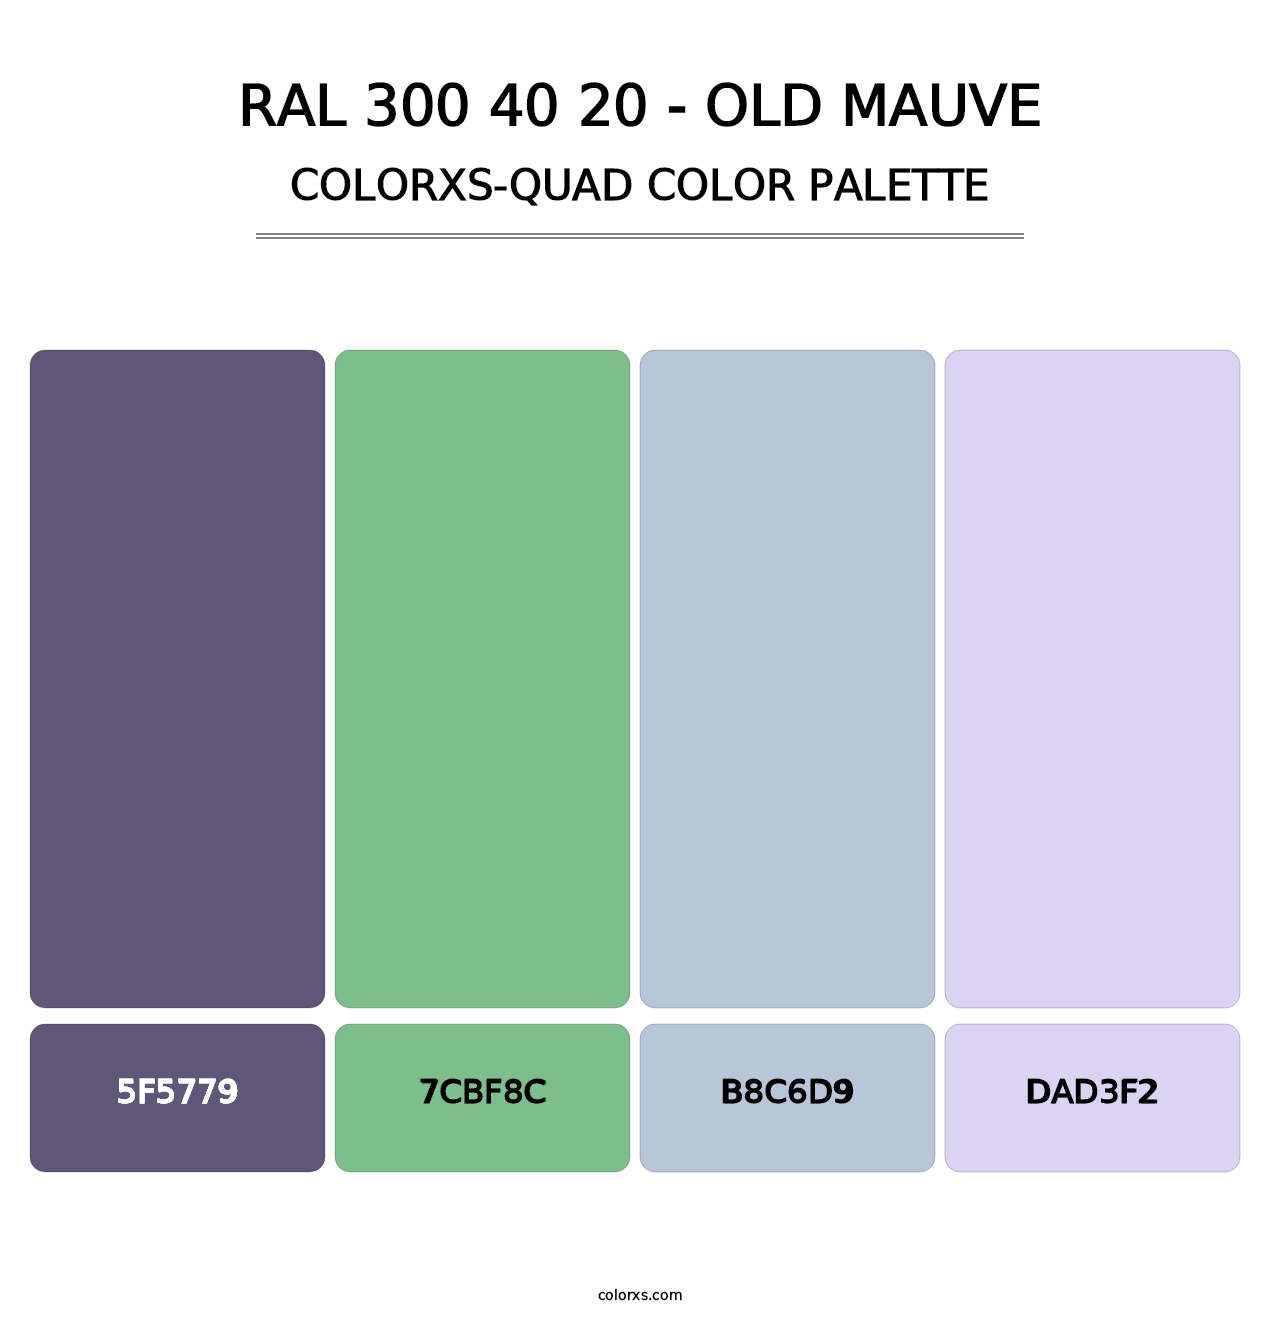 RAL 300 40 20 - Old Mauve - Colorxs Quad Palette